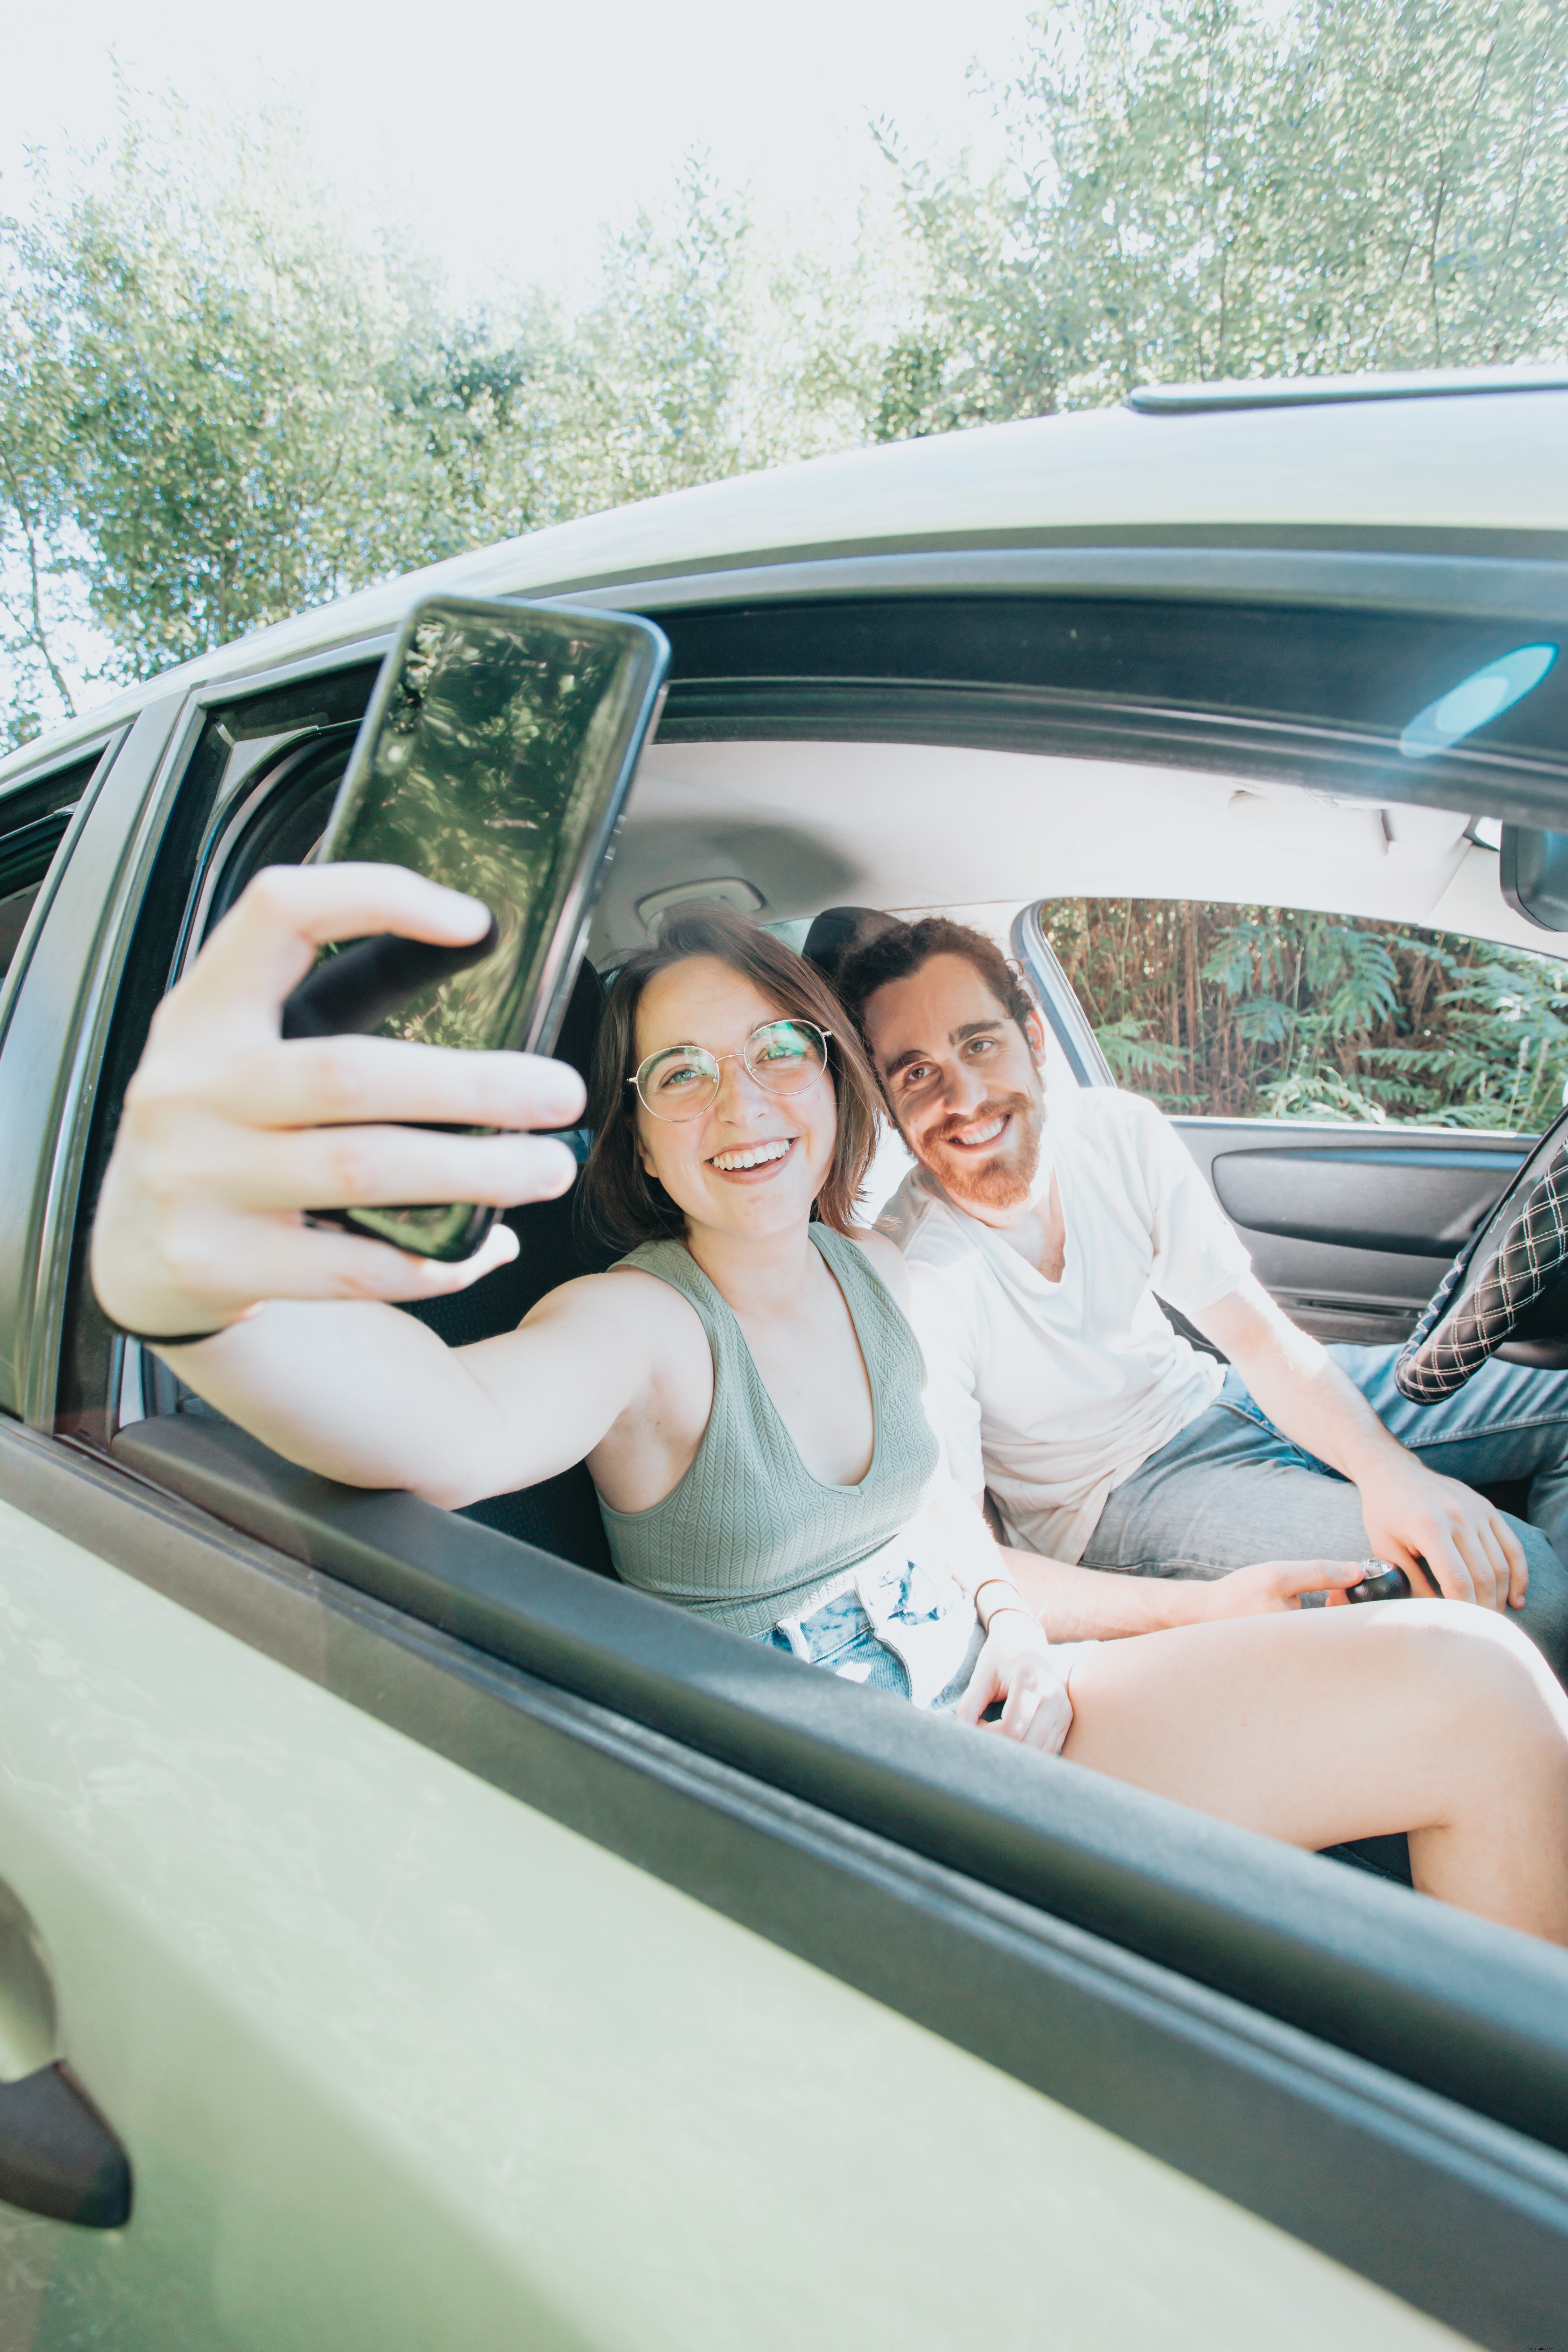 Dos personas sentadas en un coche se toman una selfie juntas 